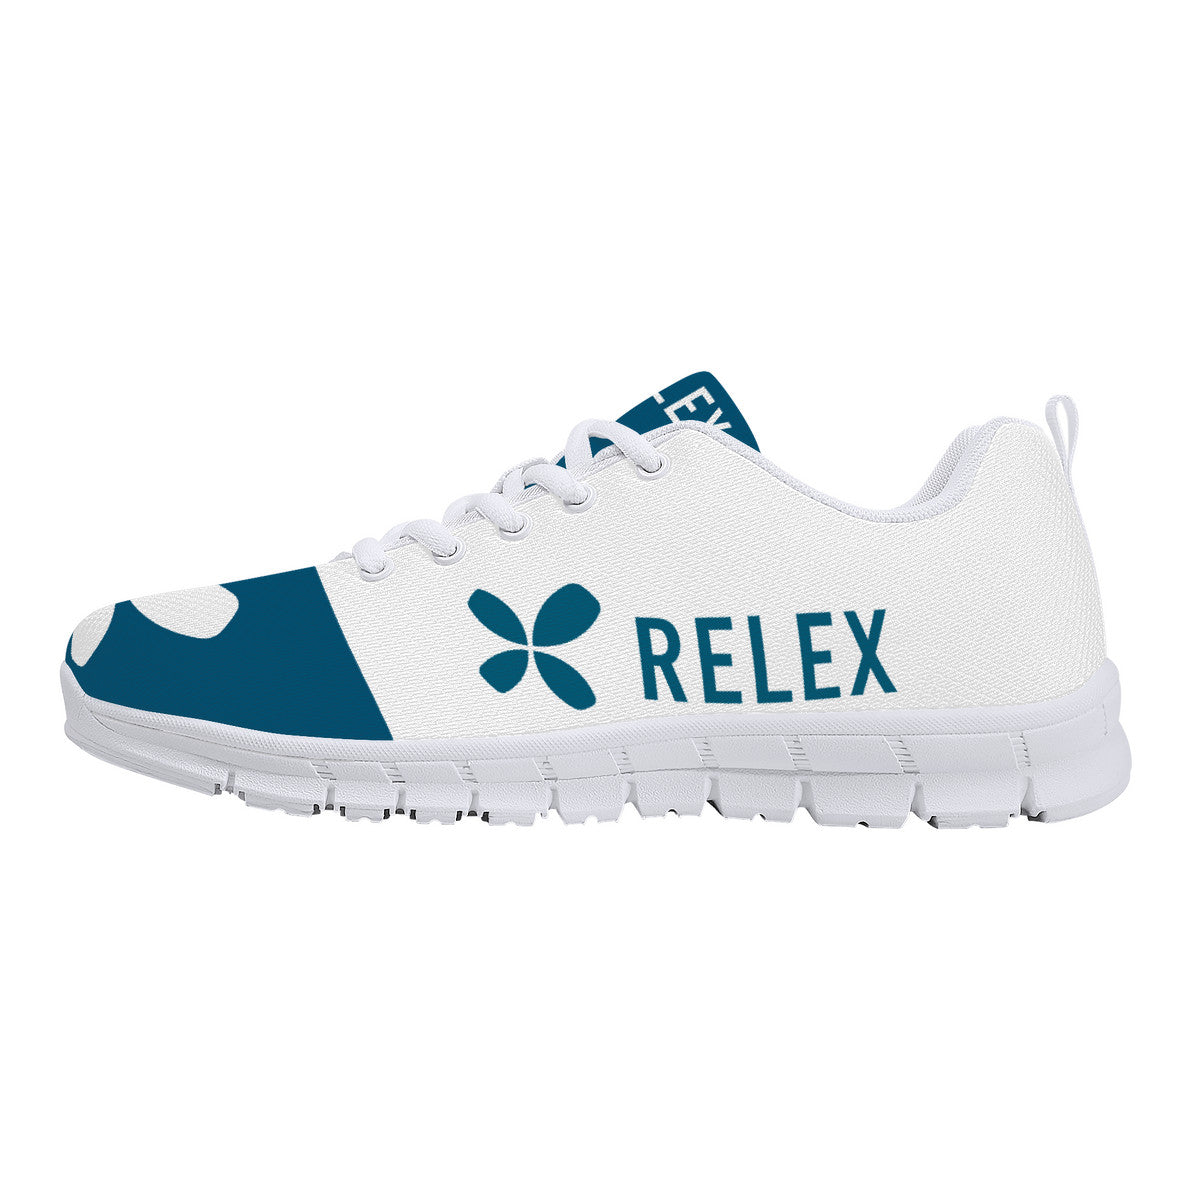 2.0 RELEX | Sneakers - White - Shoe Zero